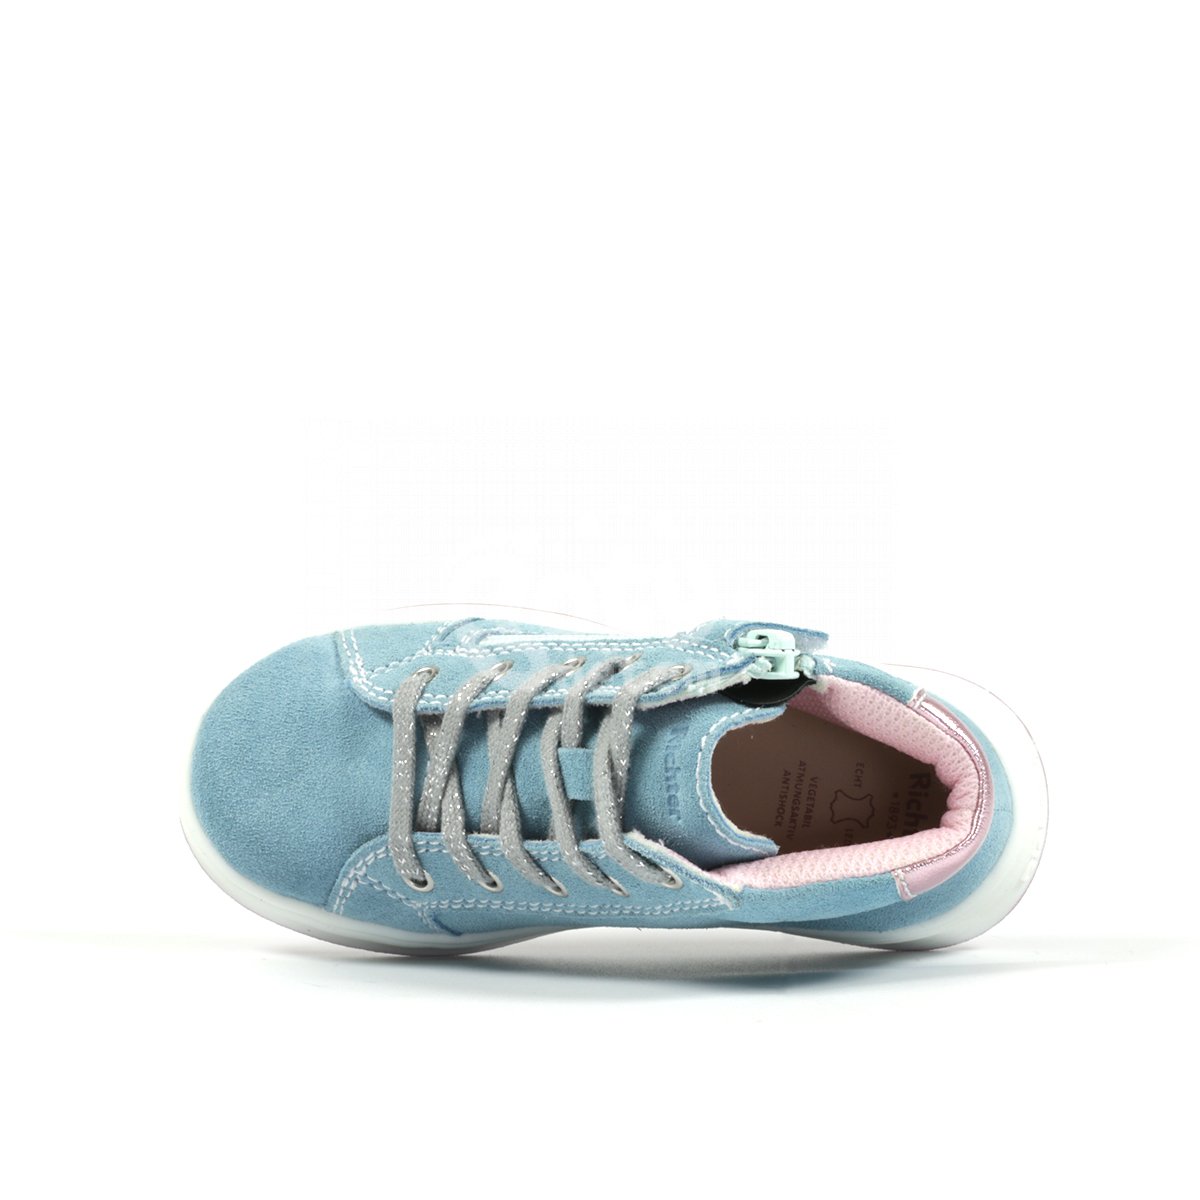 Celoroční kožená obuv Laura Richter 3607-5111-1711 modrá